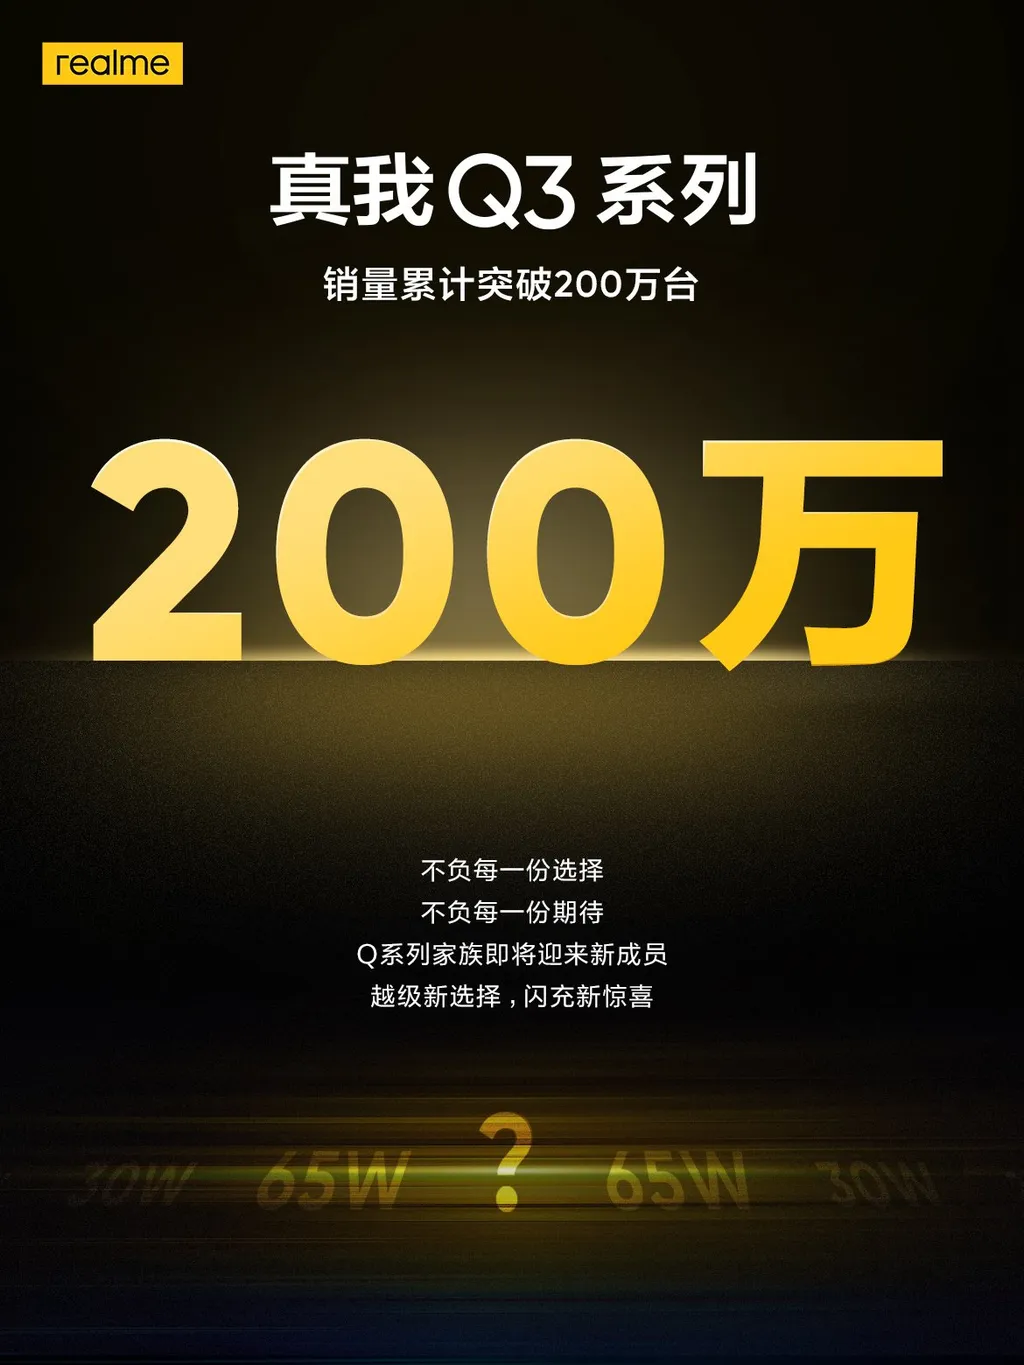 Teaser confirma sucesso da linha Realme Q3 (Imagem: Reprodução/Xu Qi Chase)